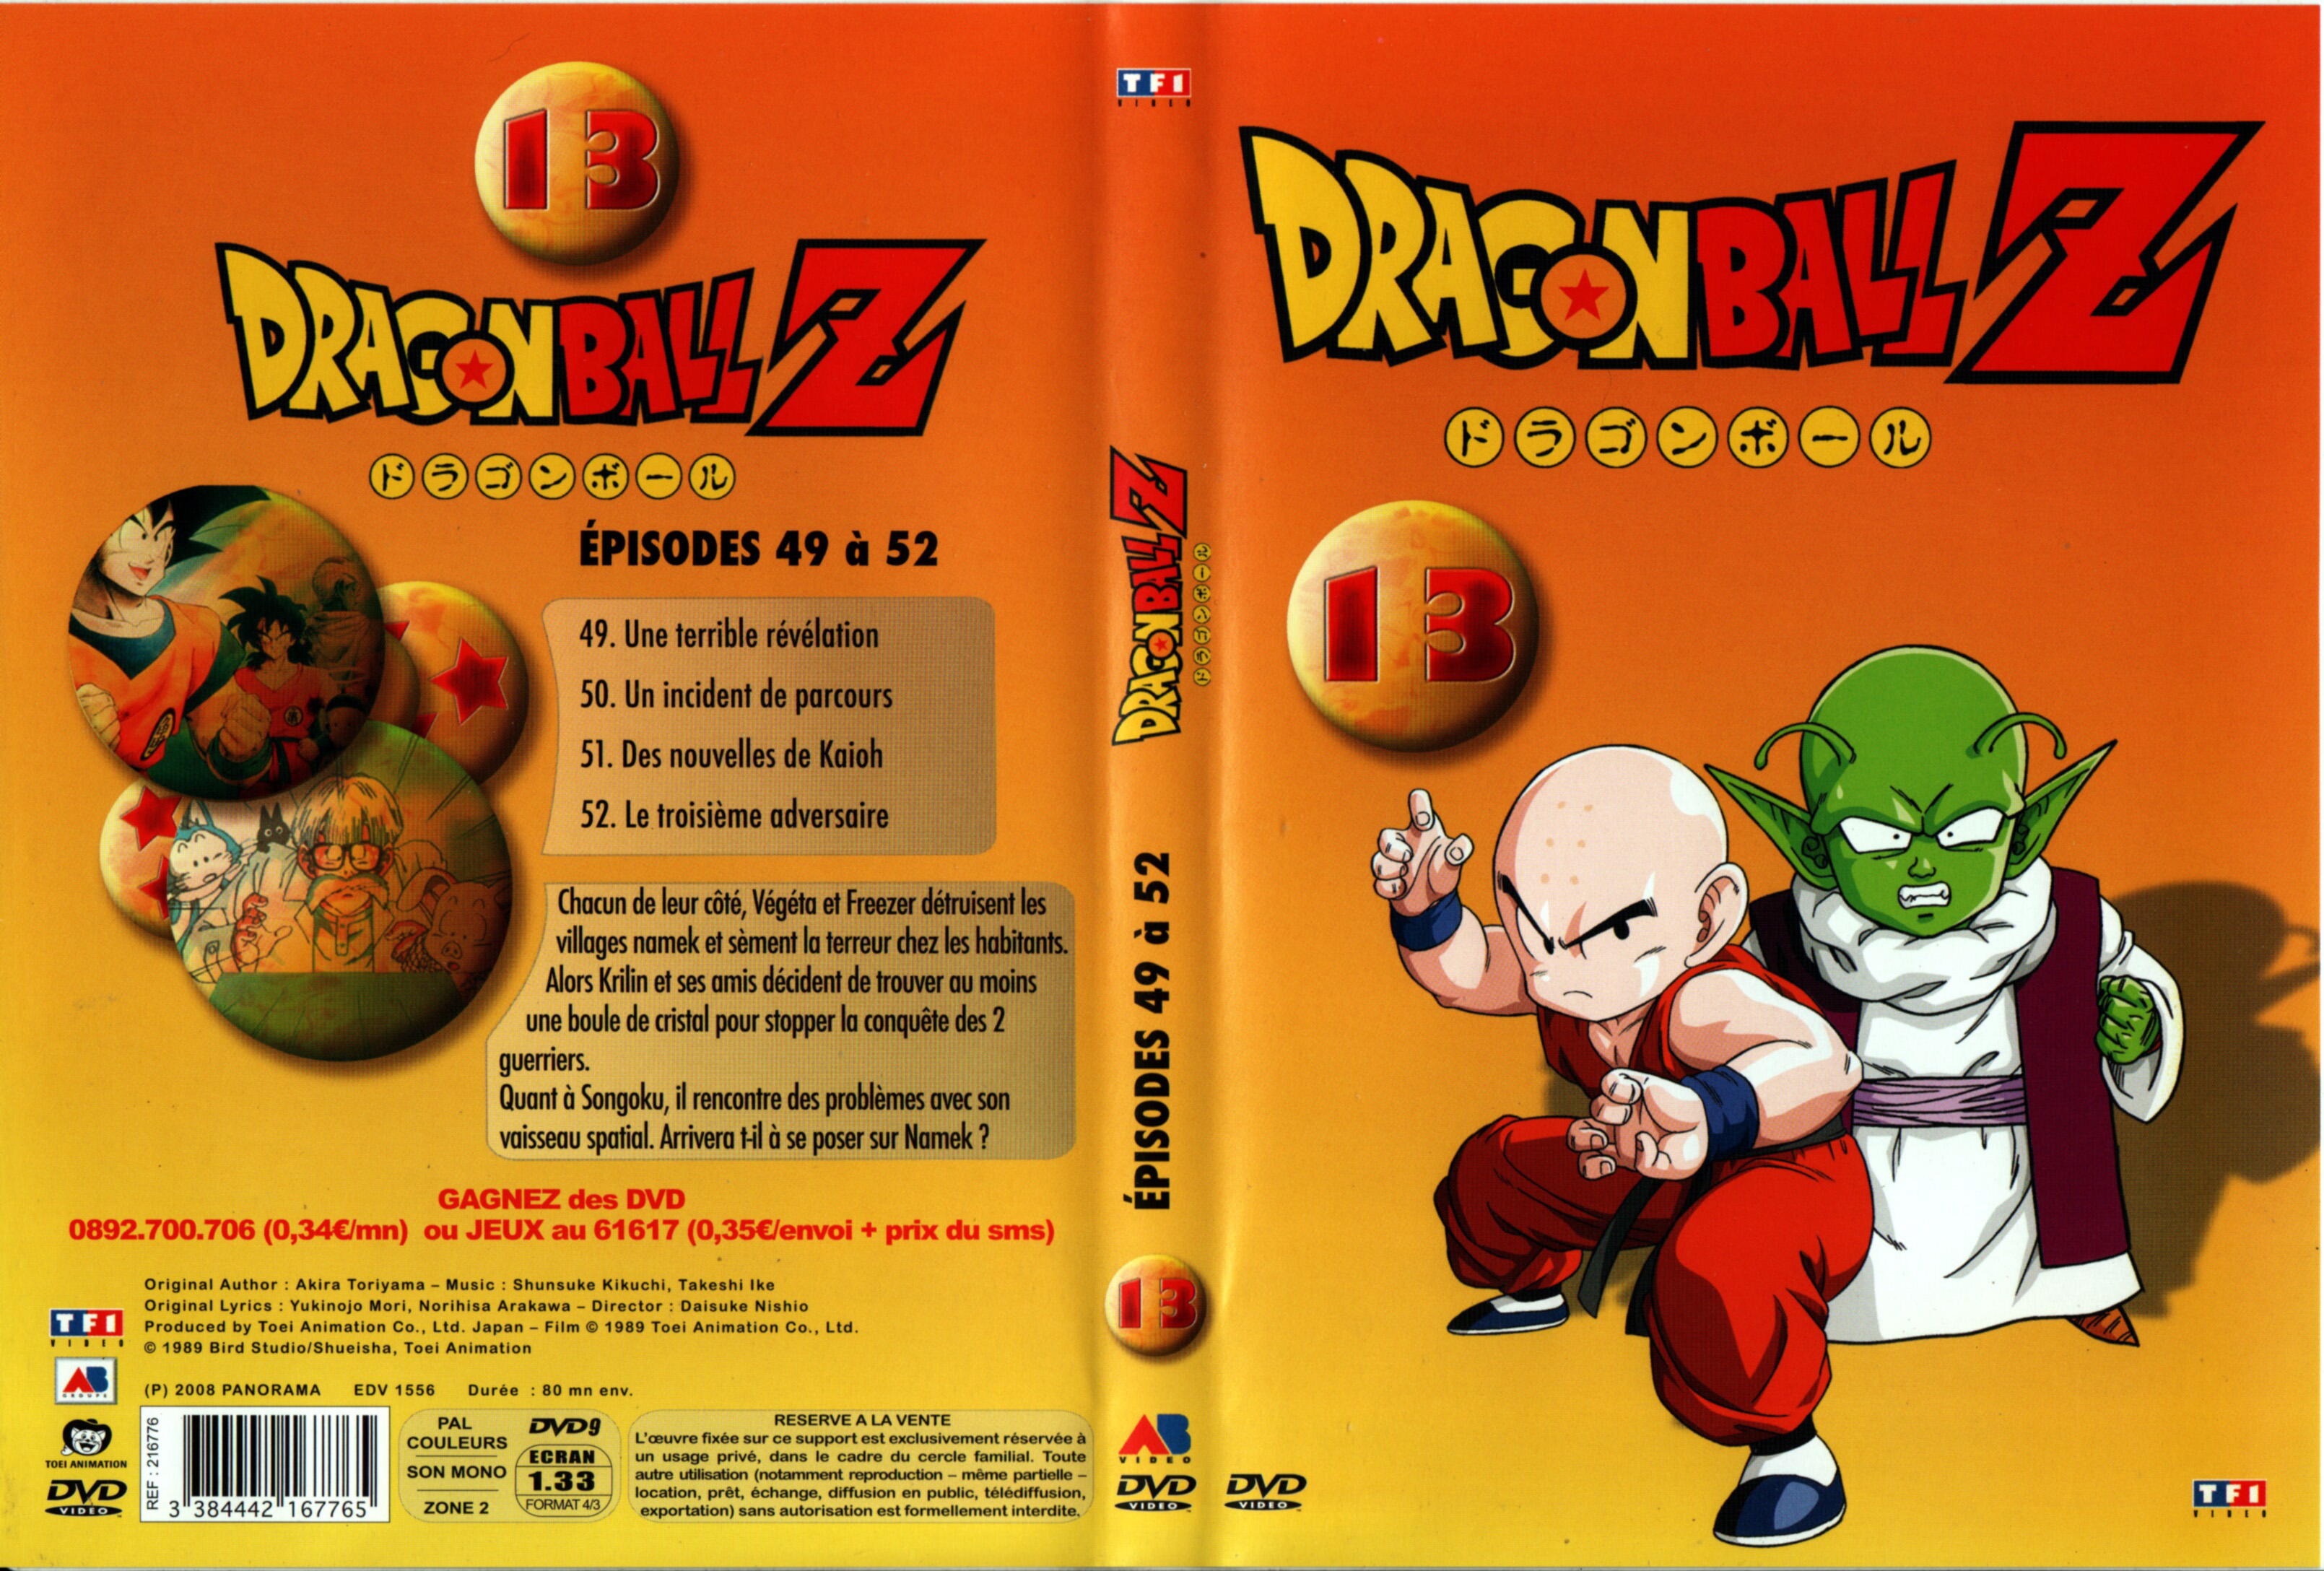 Jaquette DVD Dragon Ball Z vol 13 v2